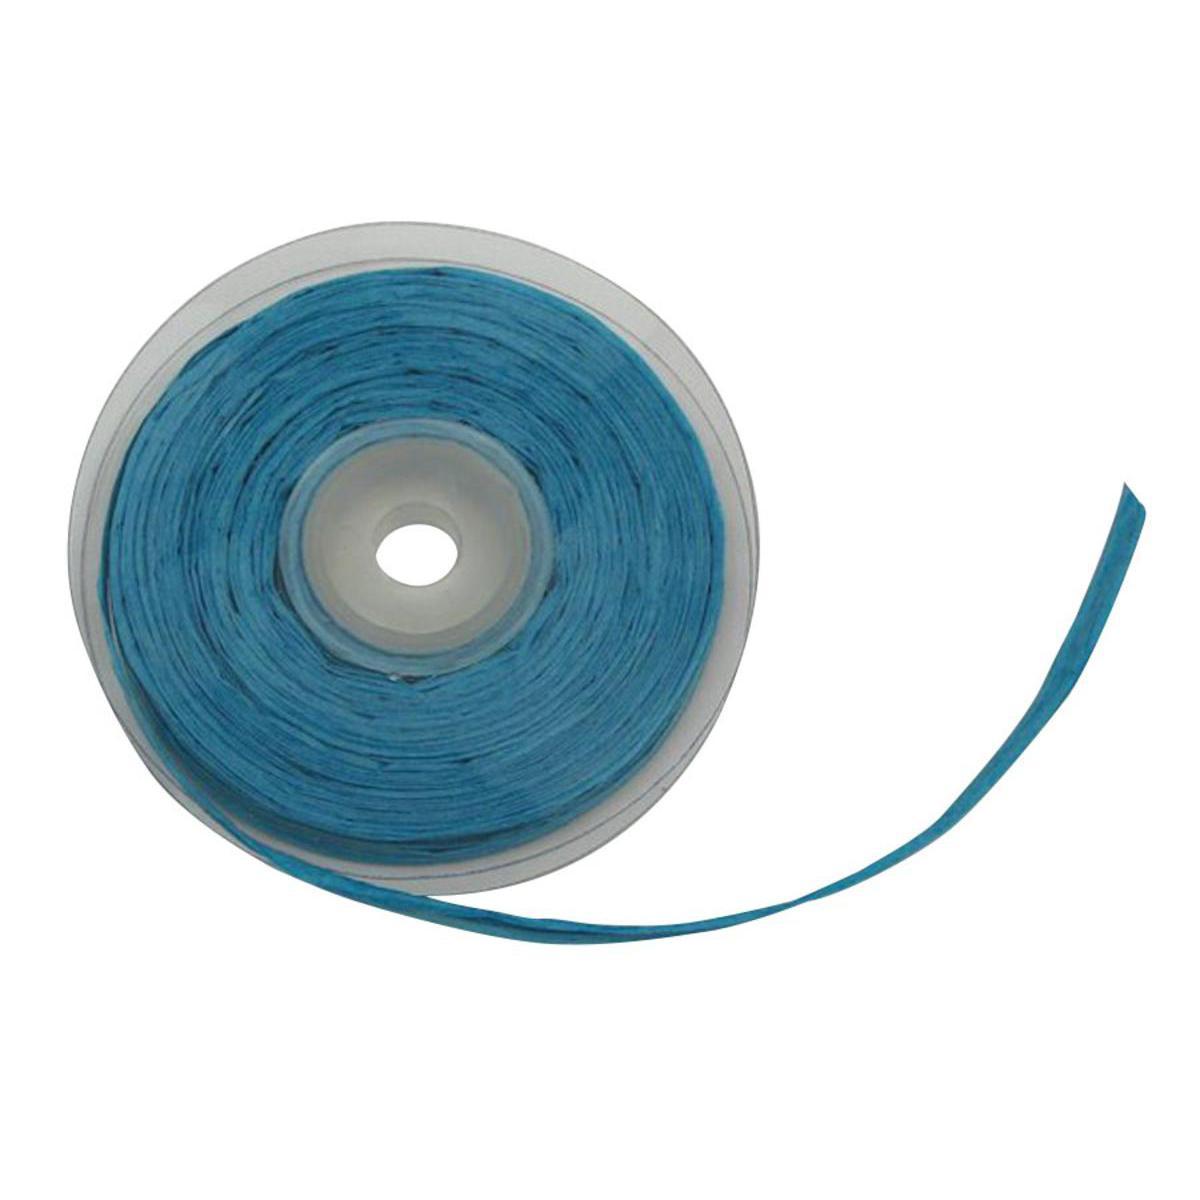 Raphia en papier - 7 mm x 25 m - Bleu turquoise